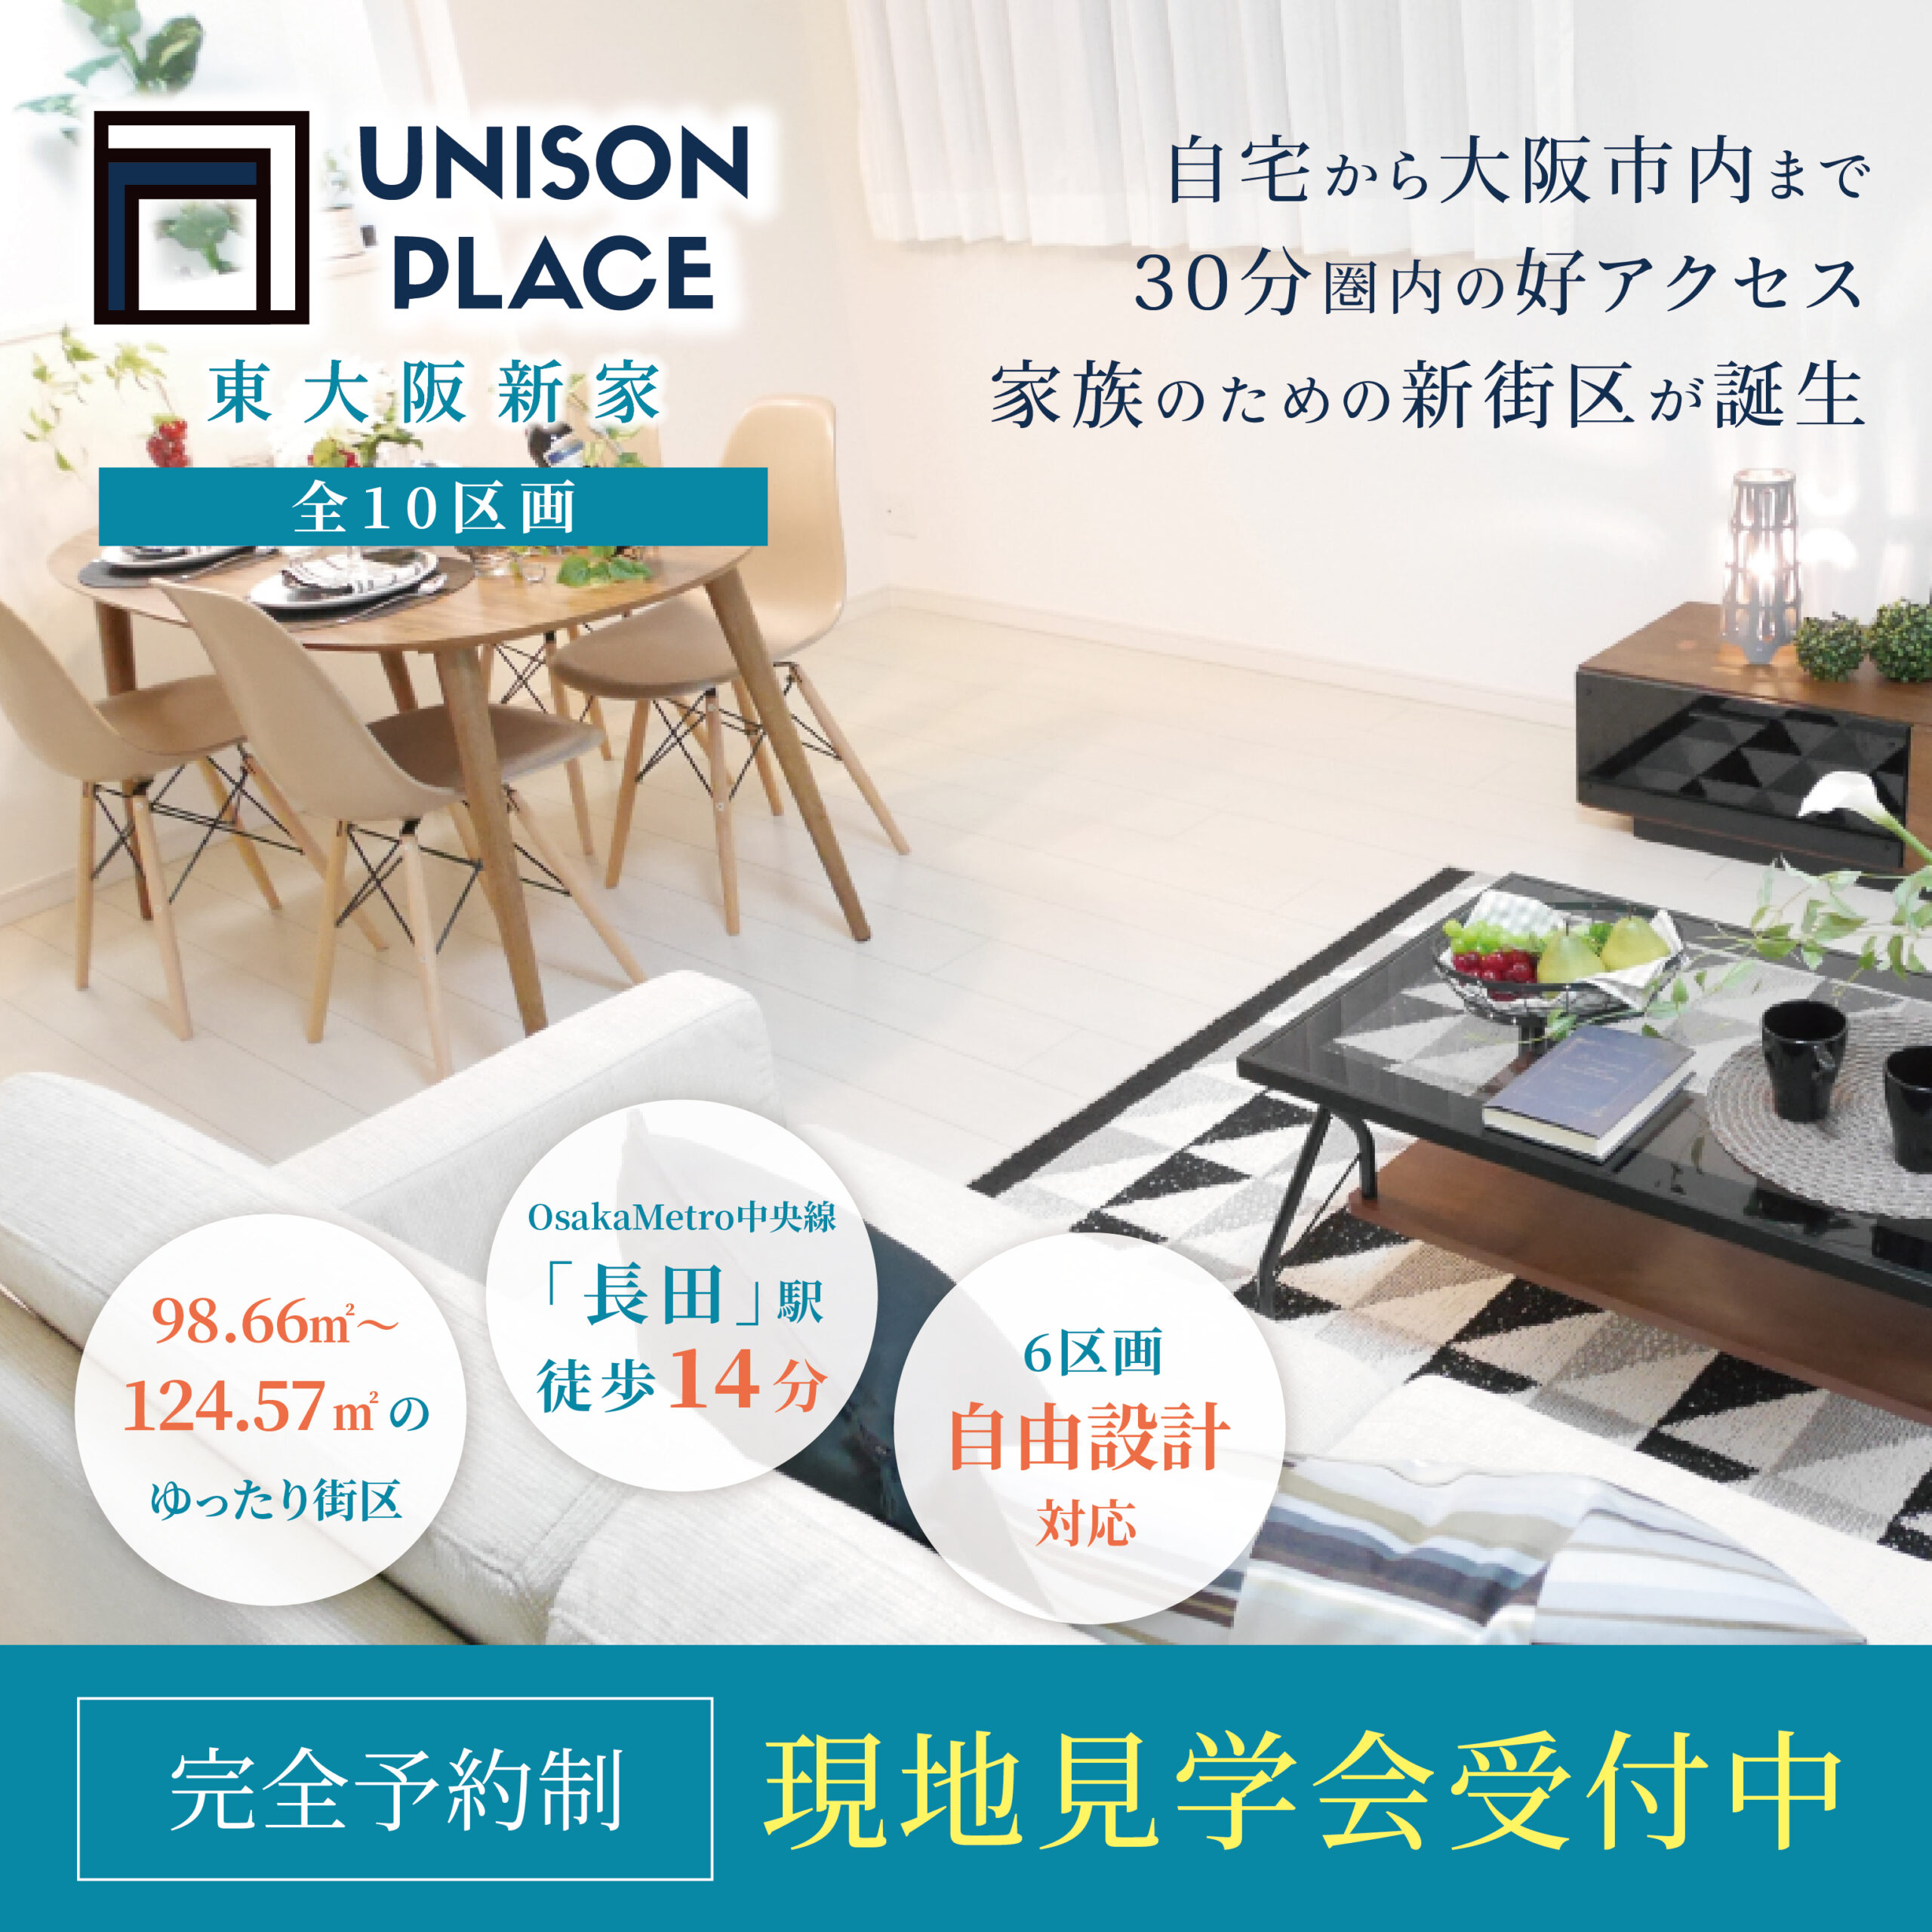 UNISON PLACE東大阪新家のアイキャッチ画像